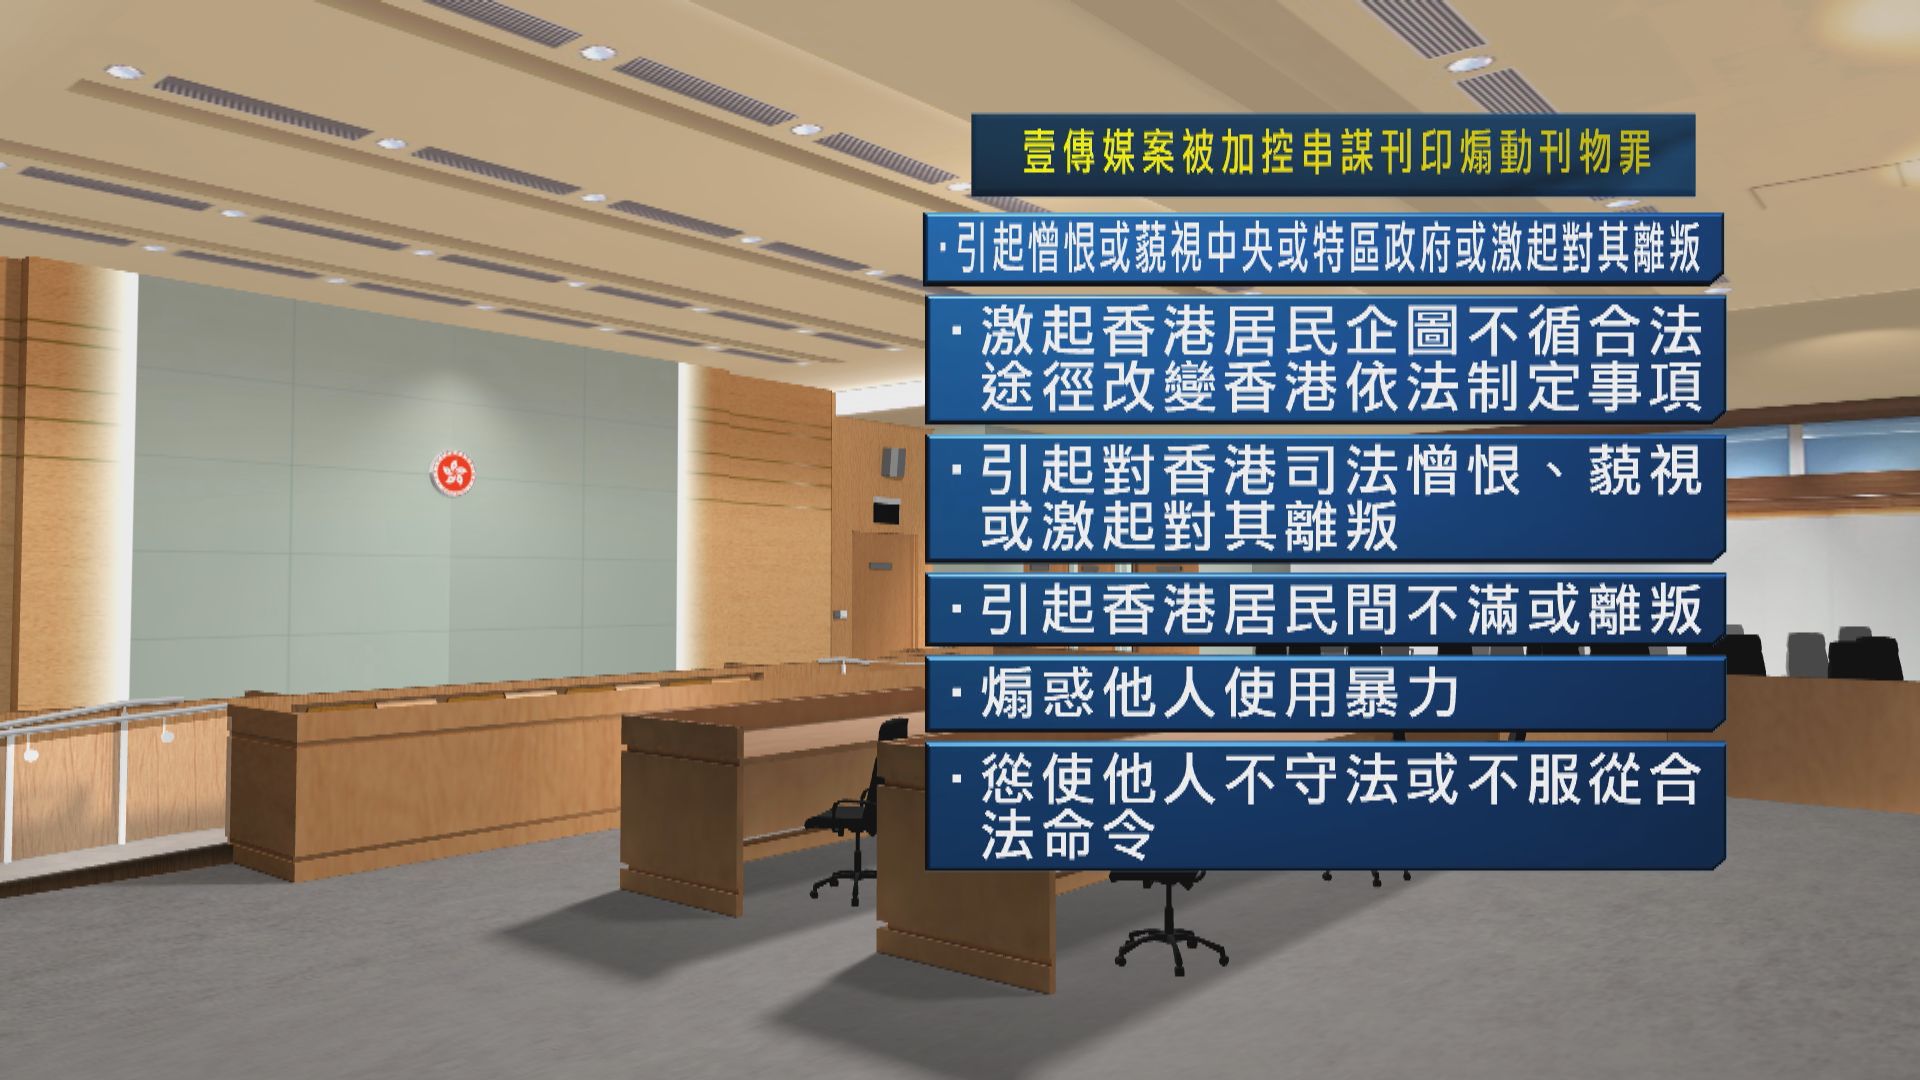 壹傳媒及蘋果日報七名前高層被加控串謀刊印煽動刊物